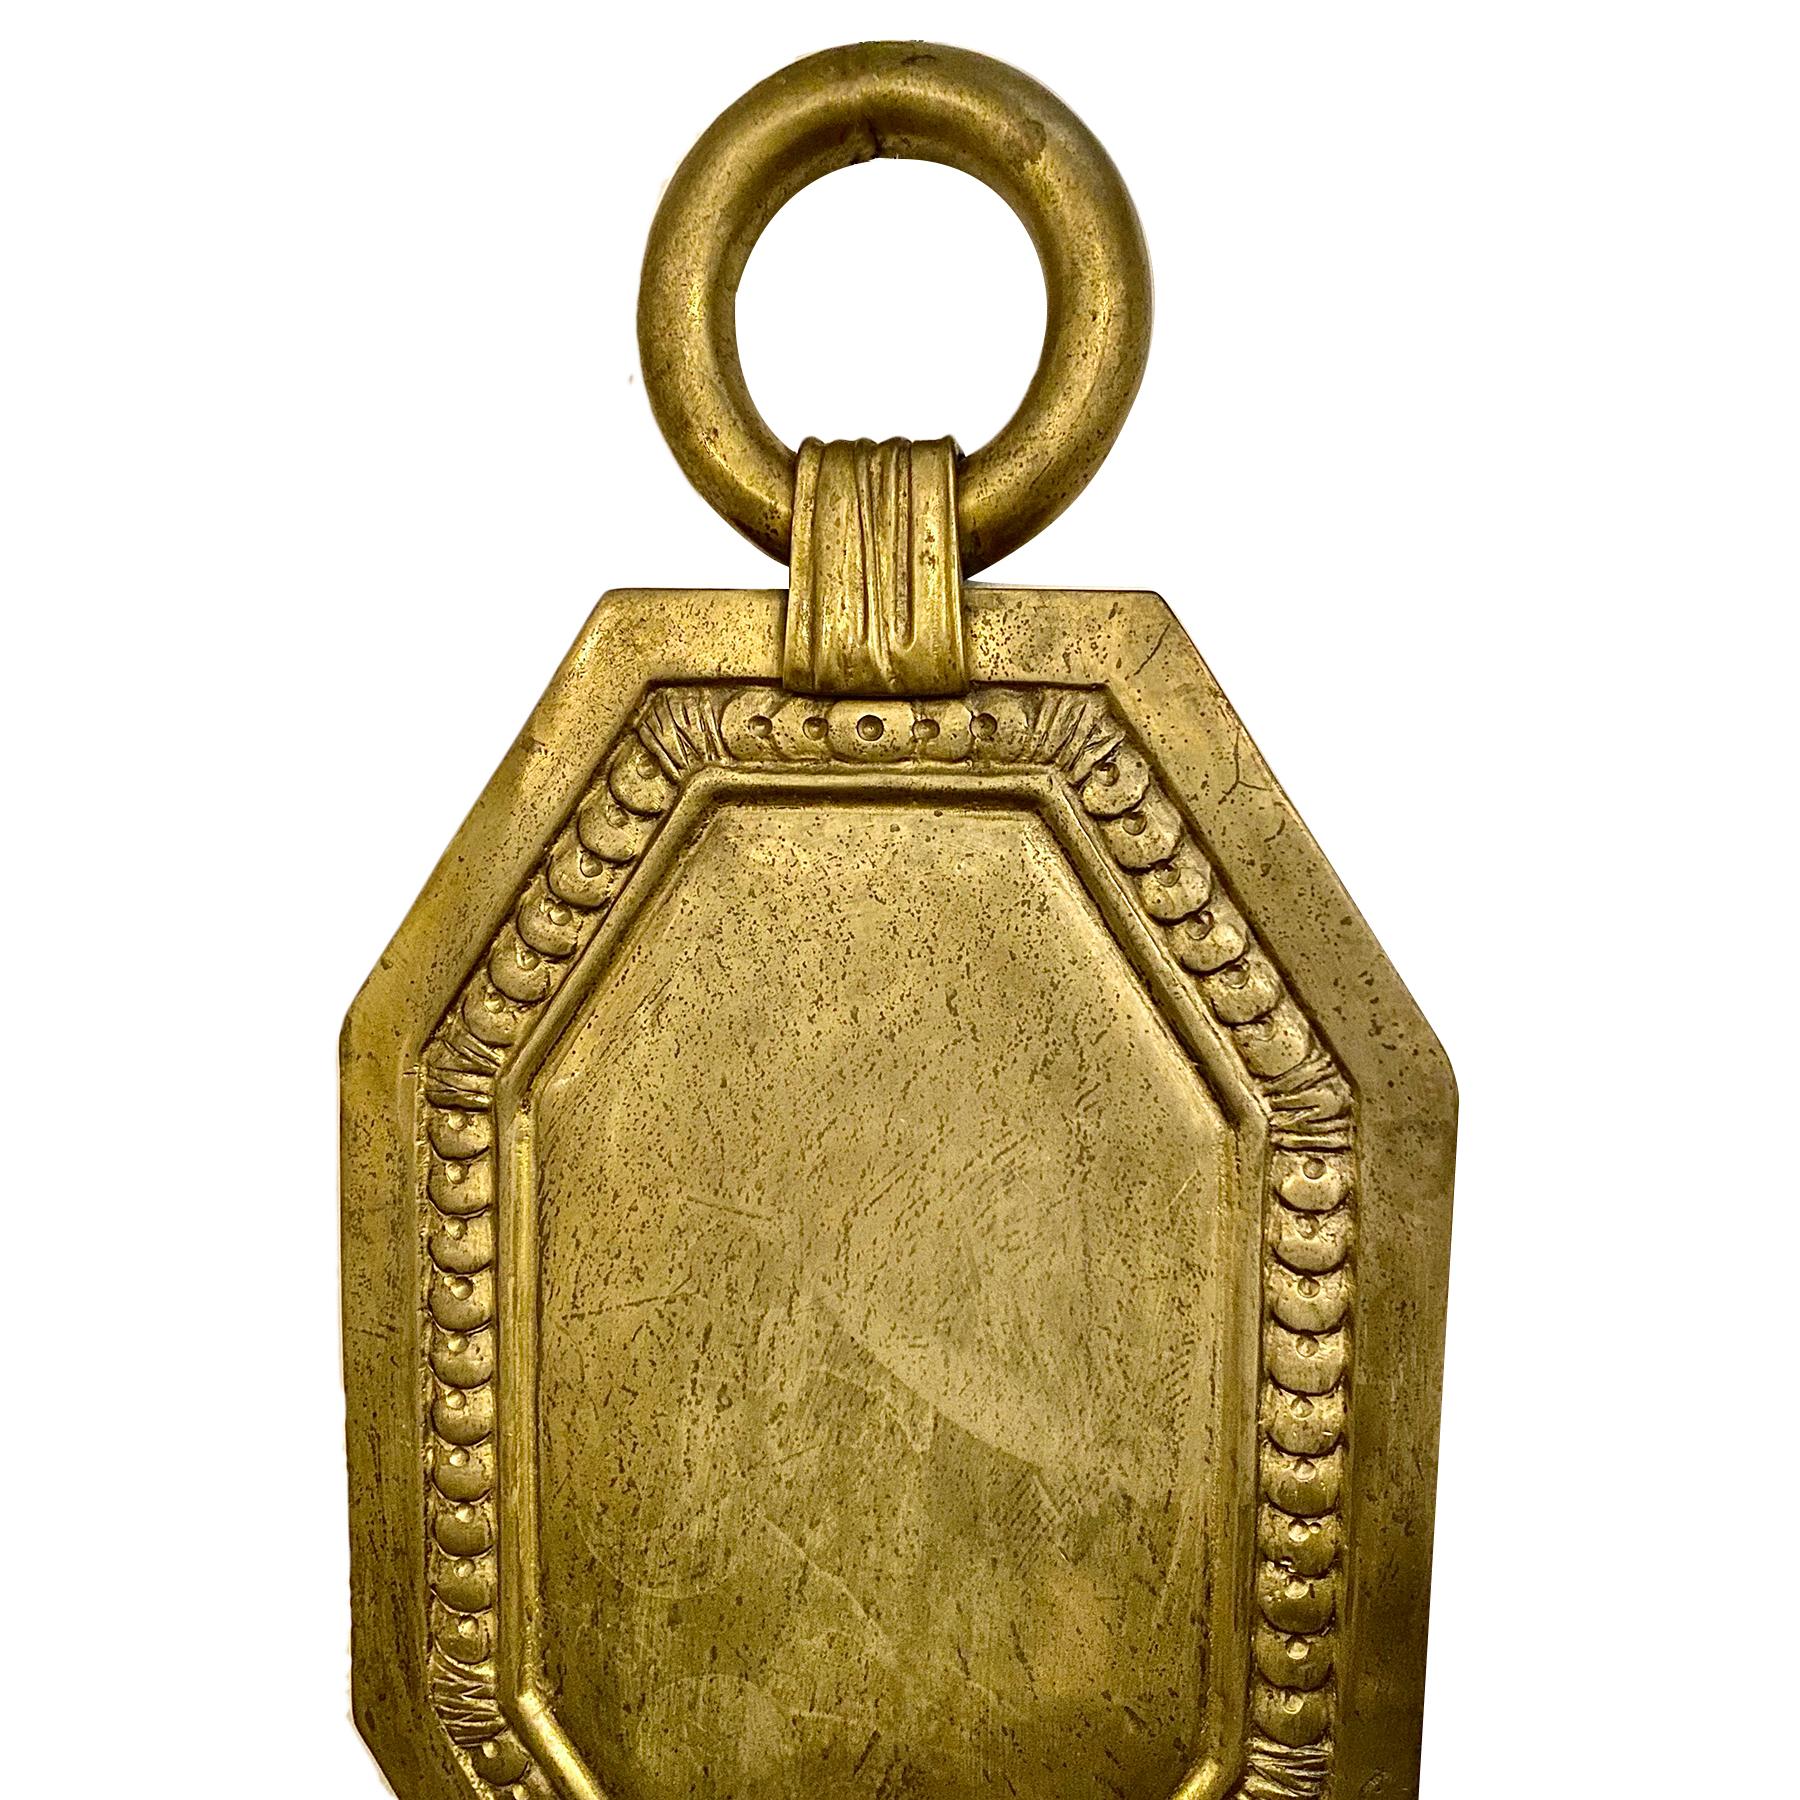 Un ensemble de quatre appliques à deux bras en bronze doré français datant des années 1920. Vendu par paire.

Mesures :
Hauteur : 20